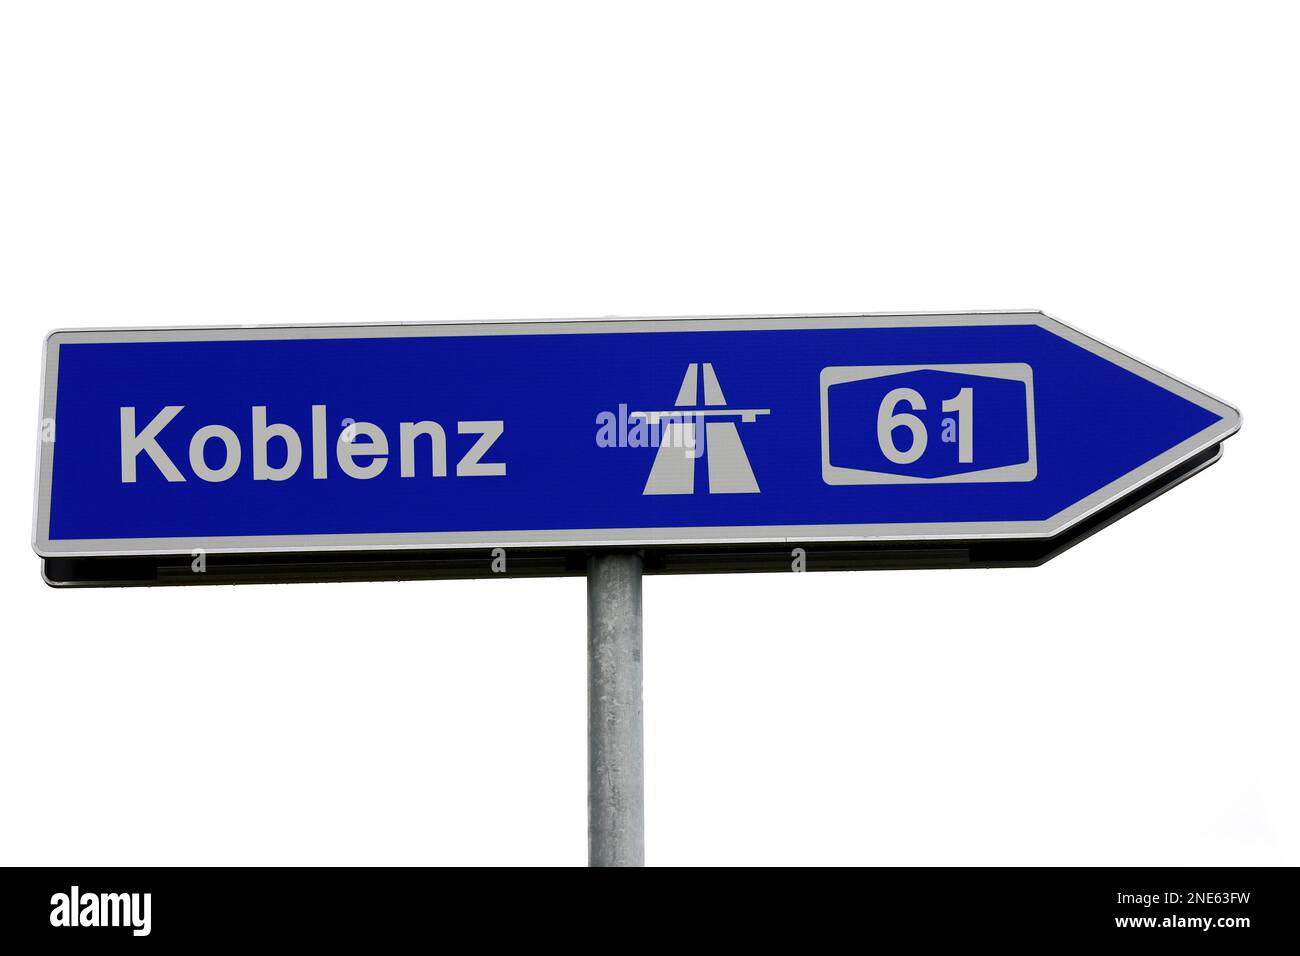 Prenez la direction de l'autoroute A61 en direction de Koblenz, Allemagne Banque D'Images